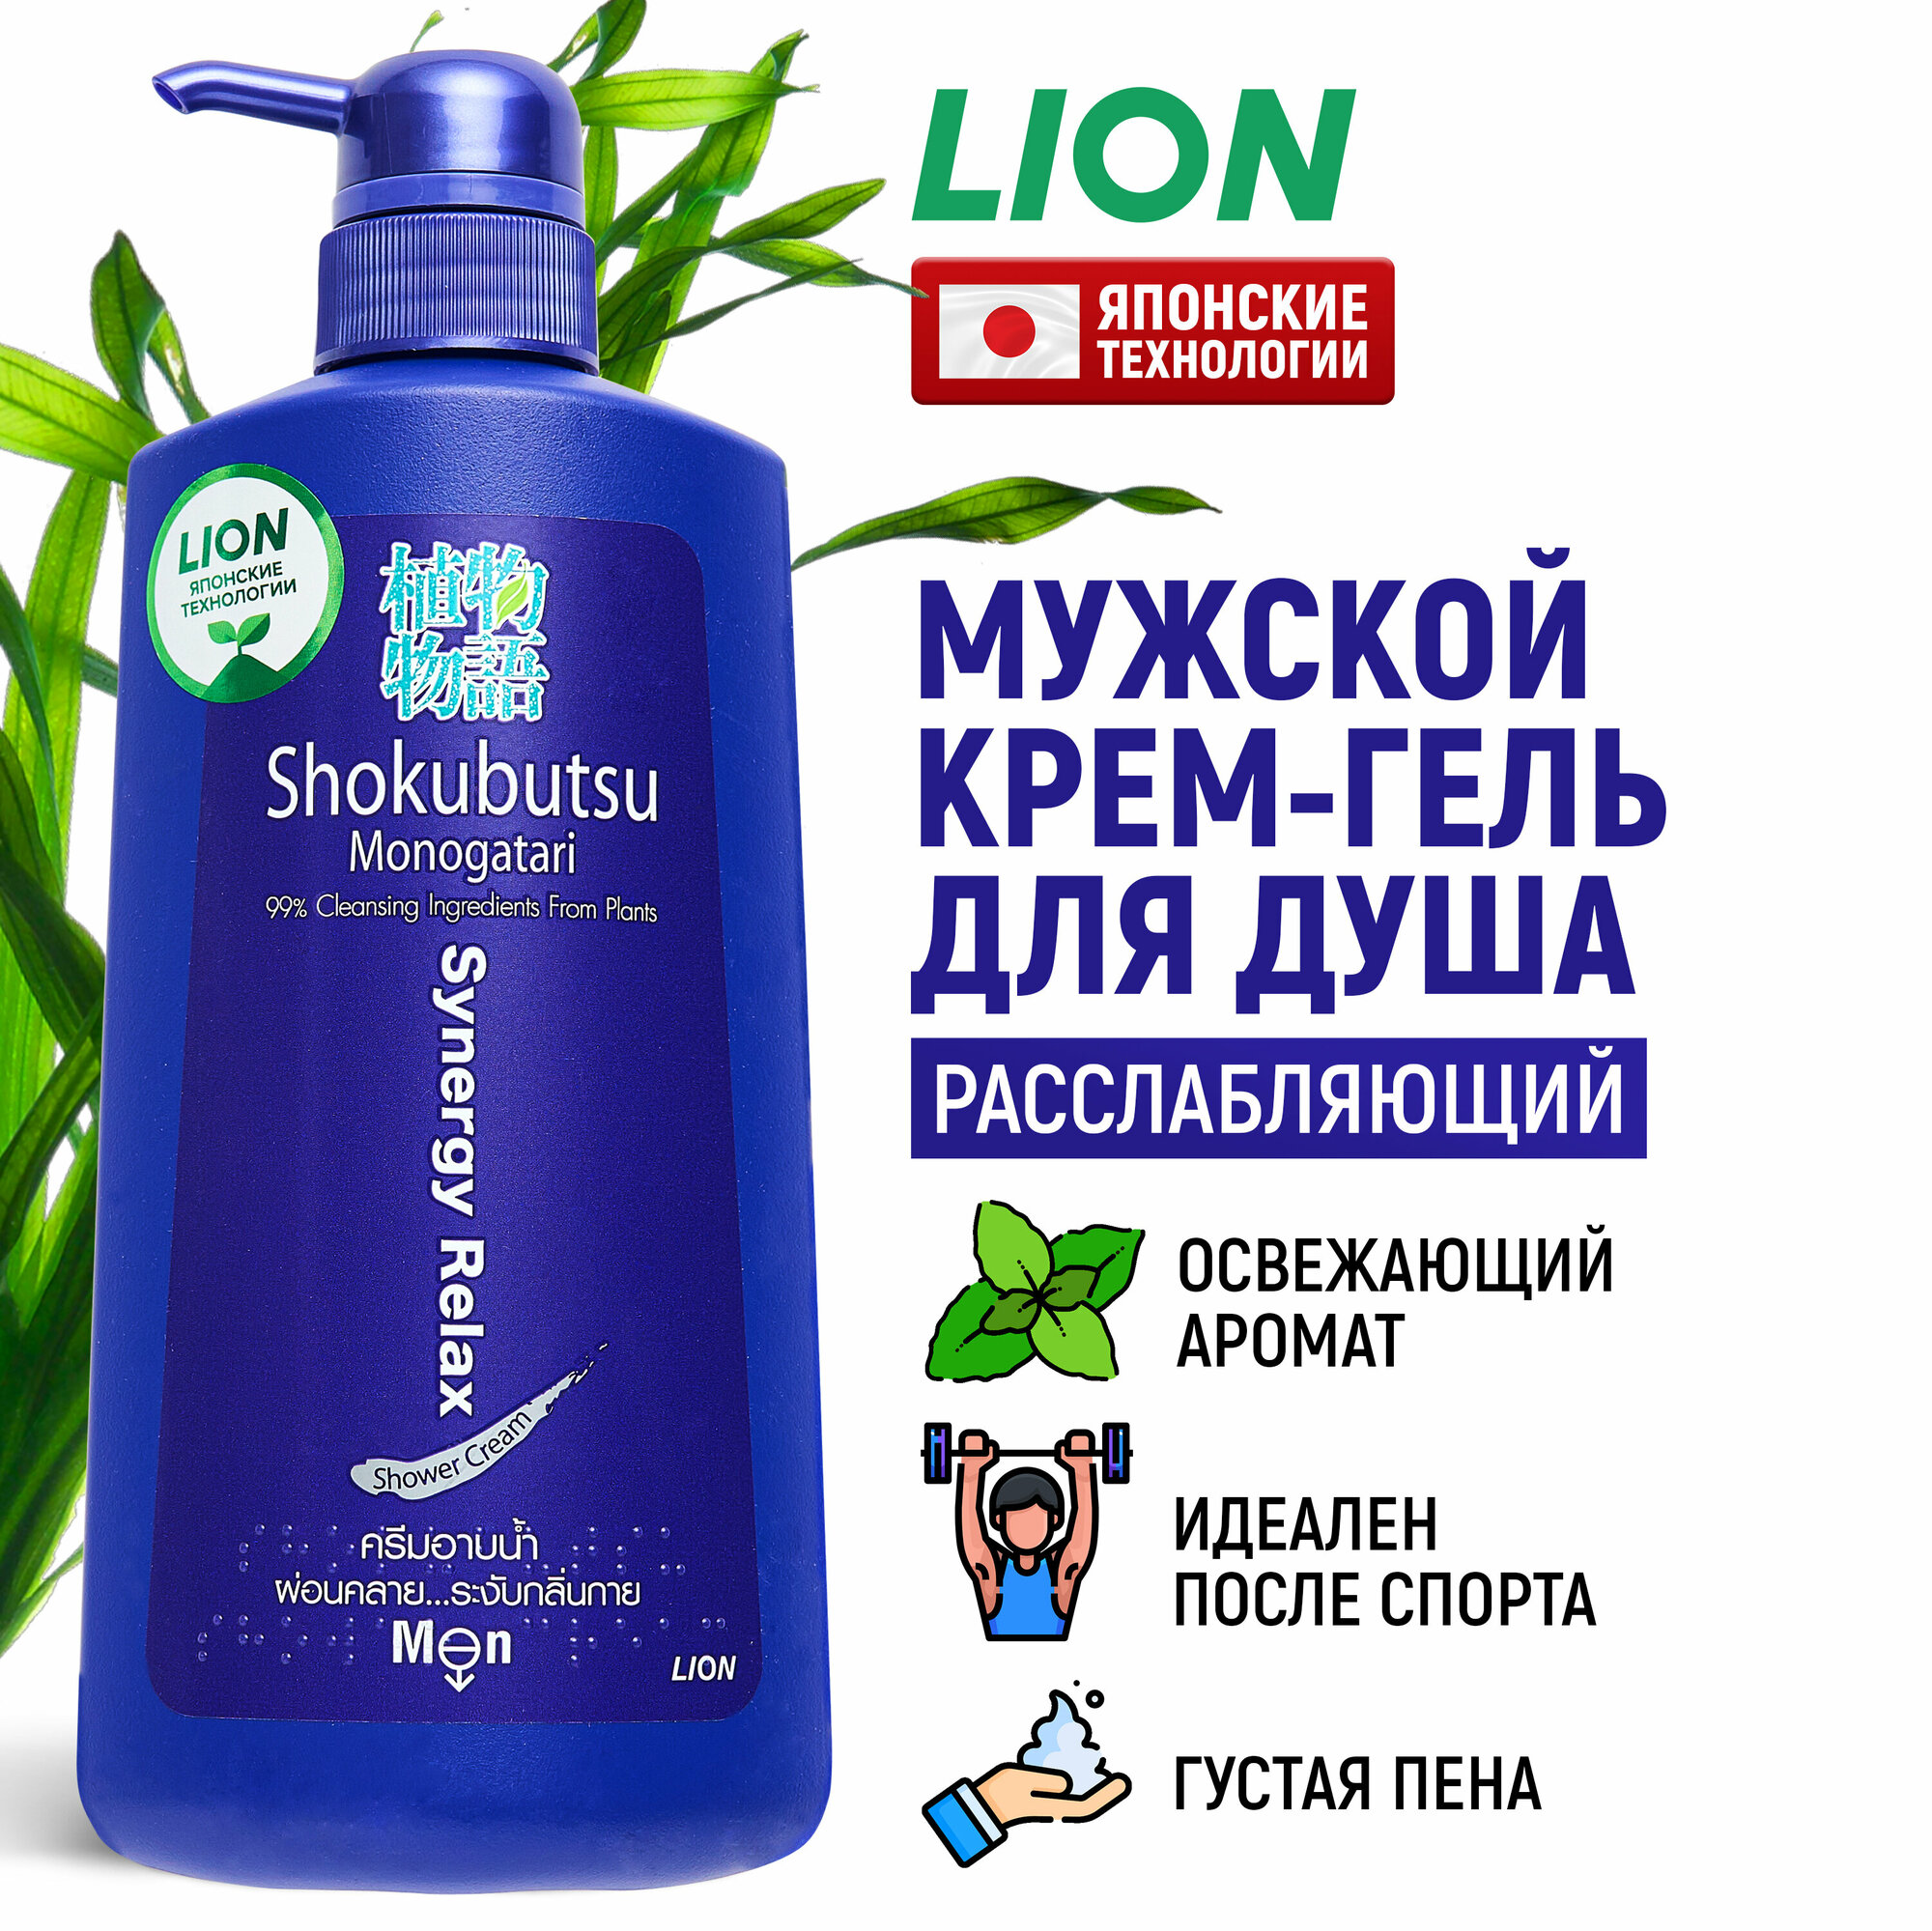 LION Крем-гель для душа мужской Shokubutsu расслабляющий с экстрактом водорослей / японские технологии / с дозатором, 500 мл